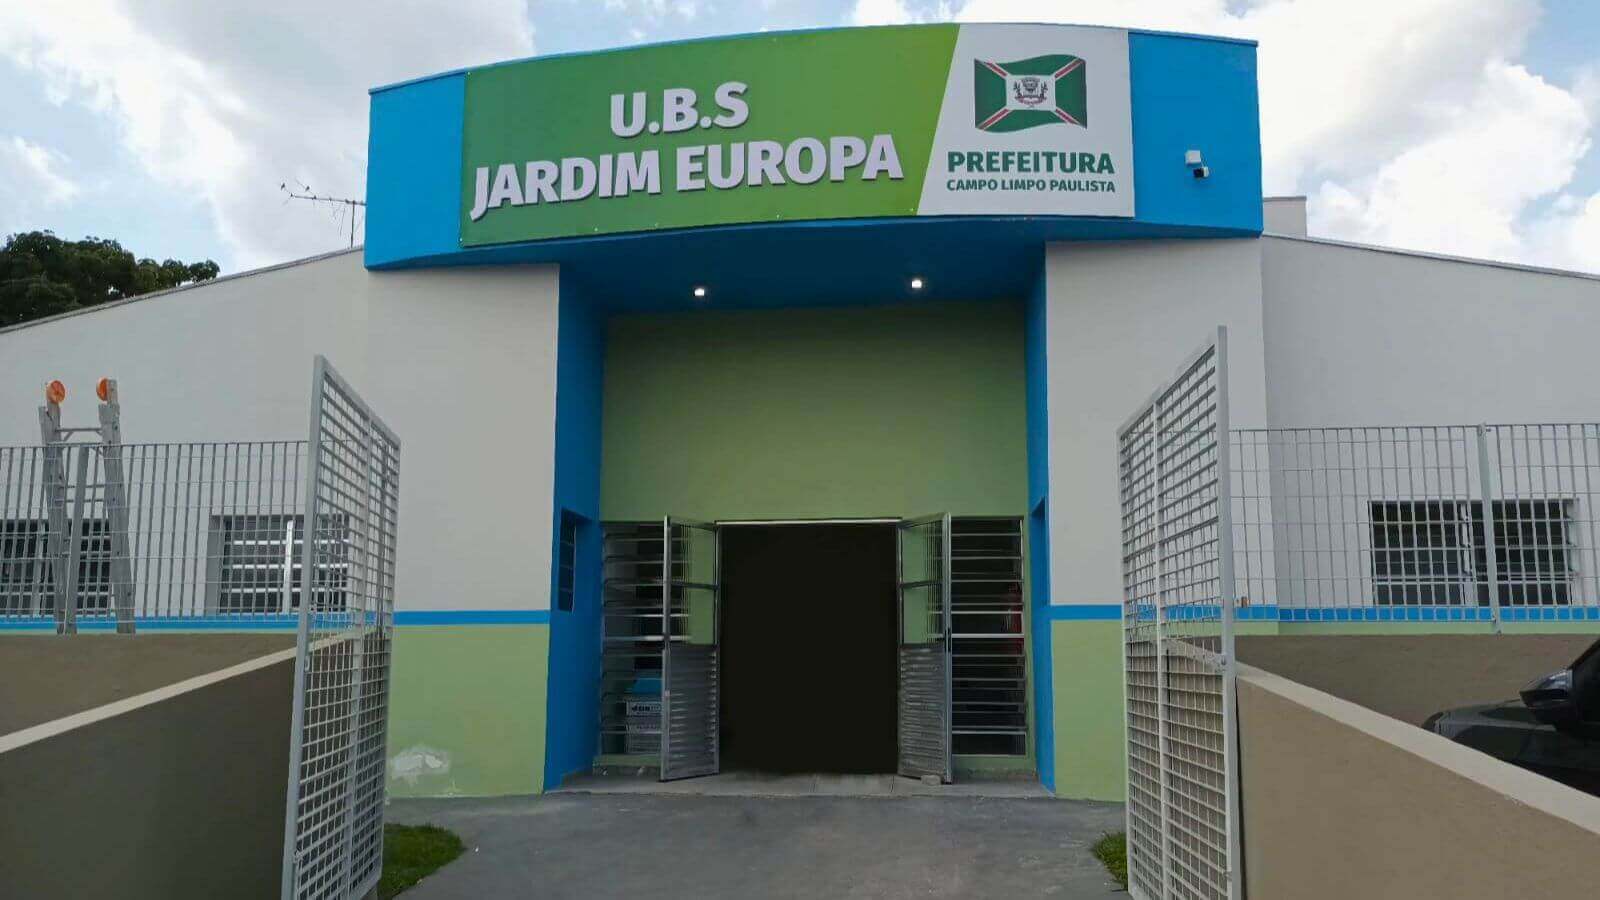 UBS Jardim Europa, Campo Limpo Pailista